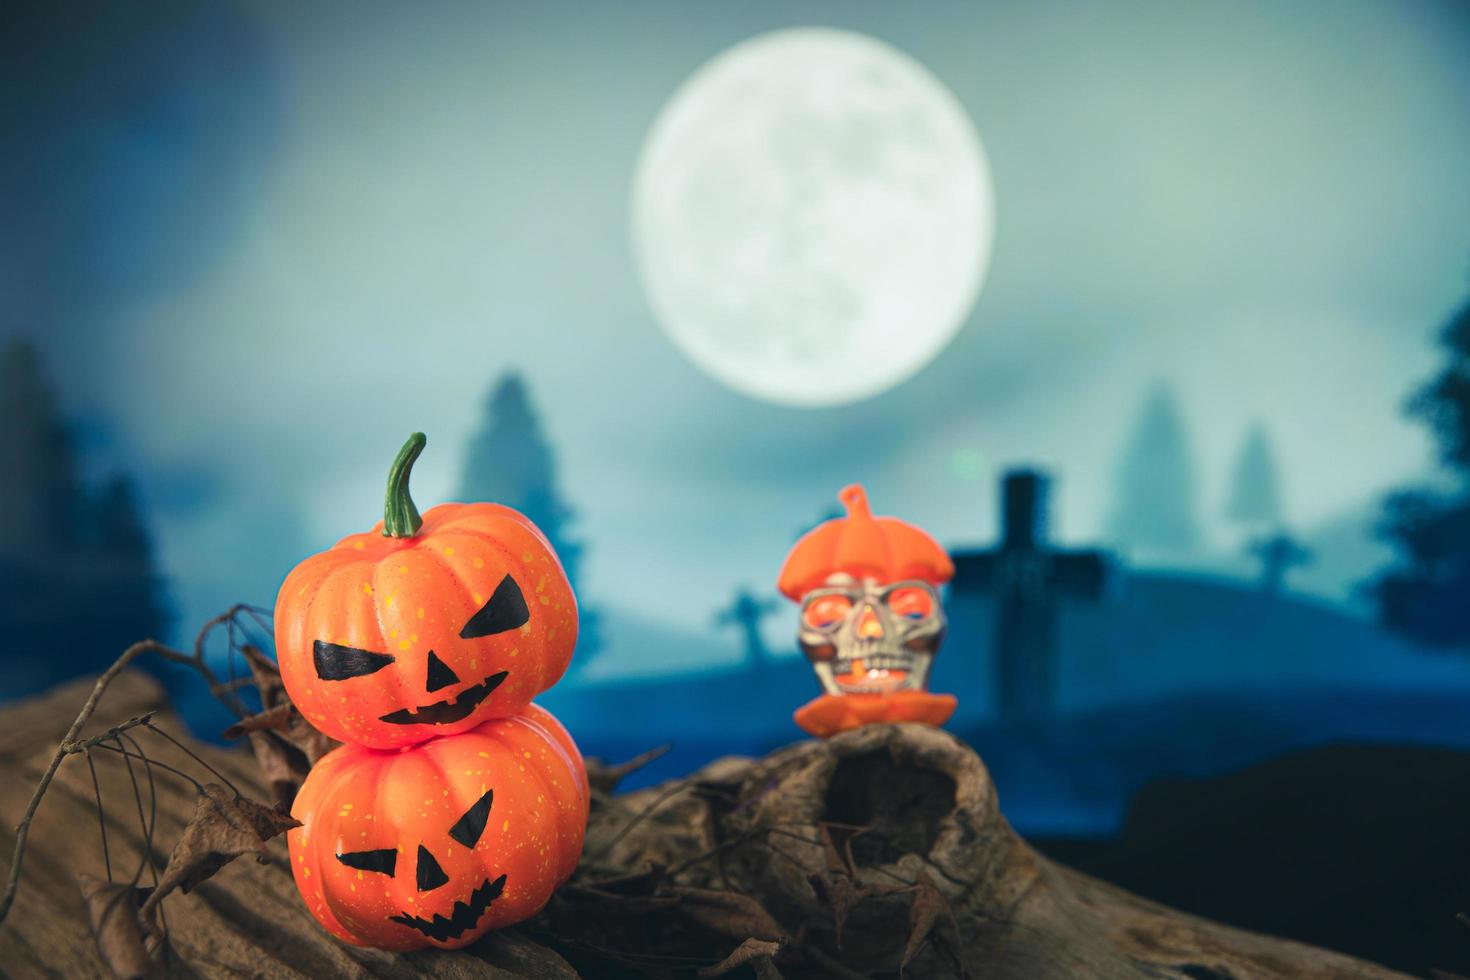 spookachtige begraafplaats met gloed halloween pompoen foto